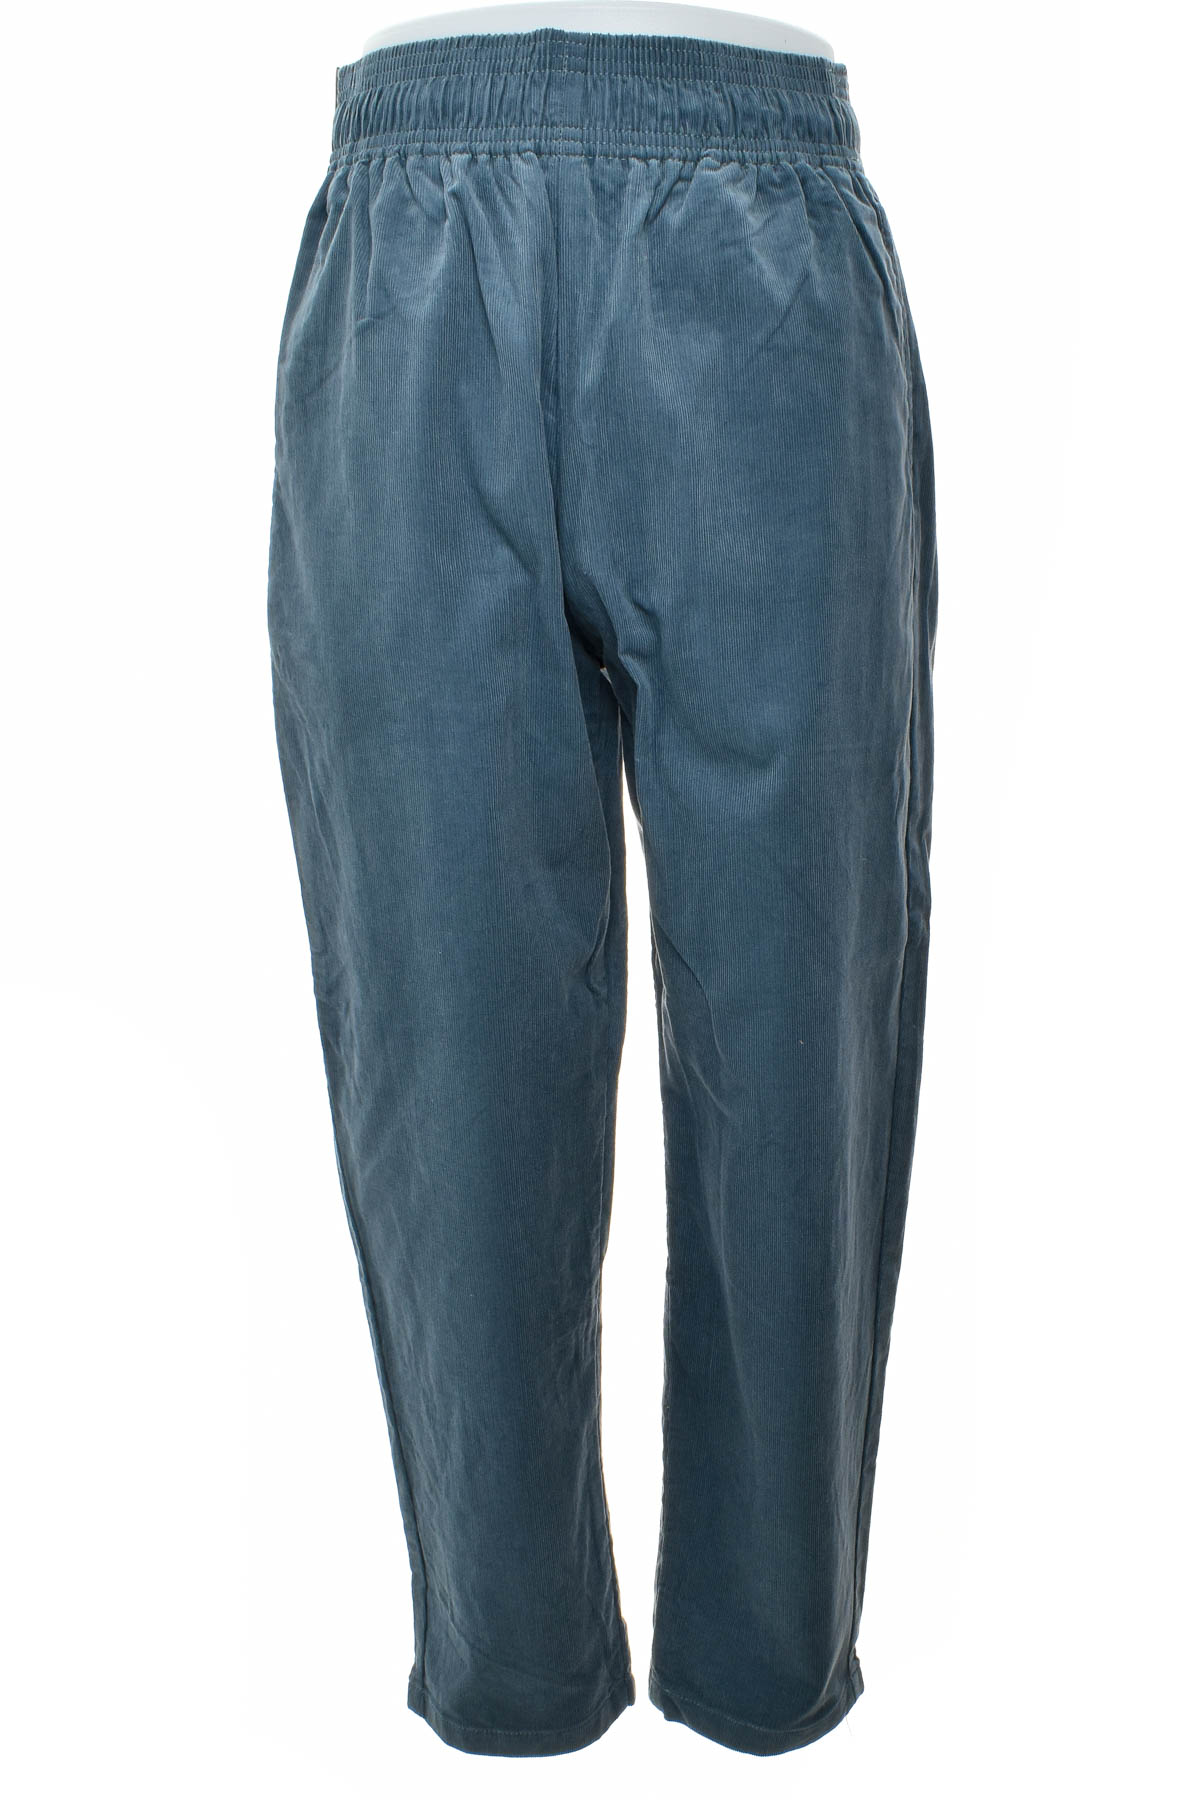 Pantalon pentru bărbați - Gu - 0